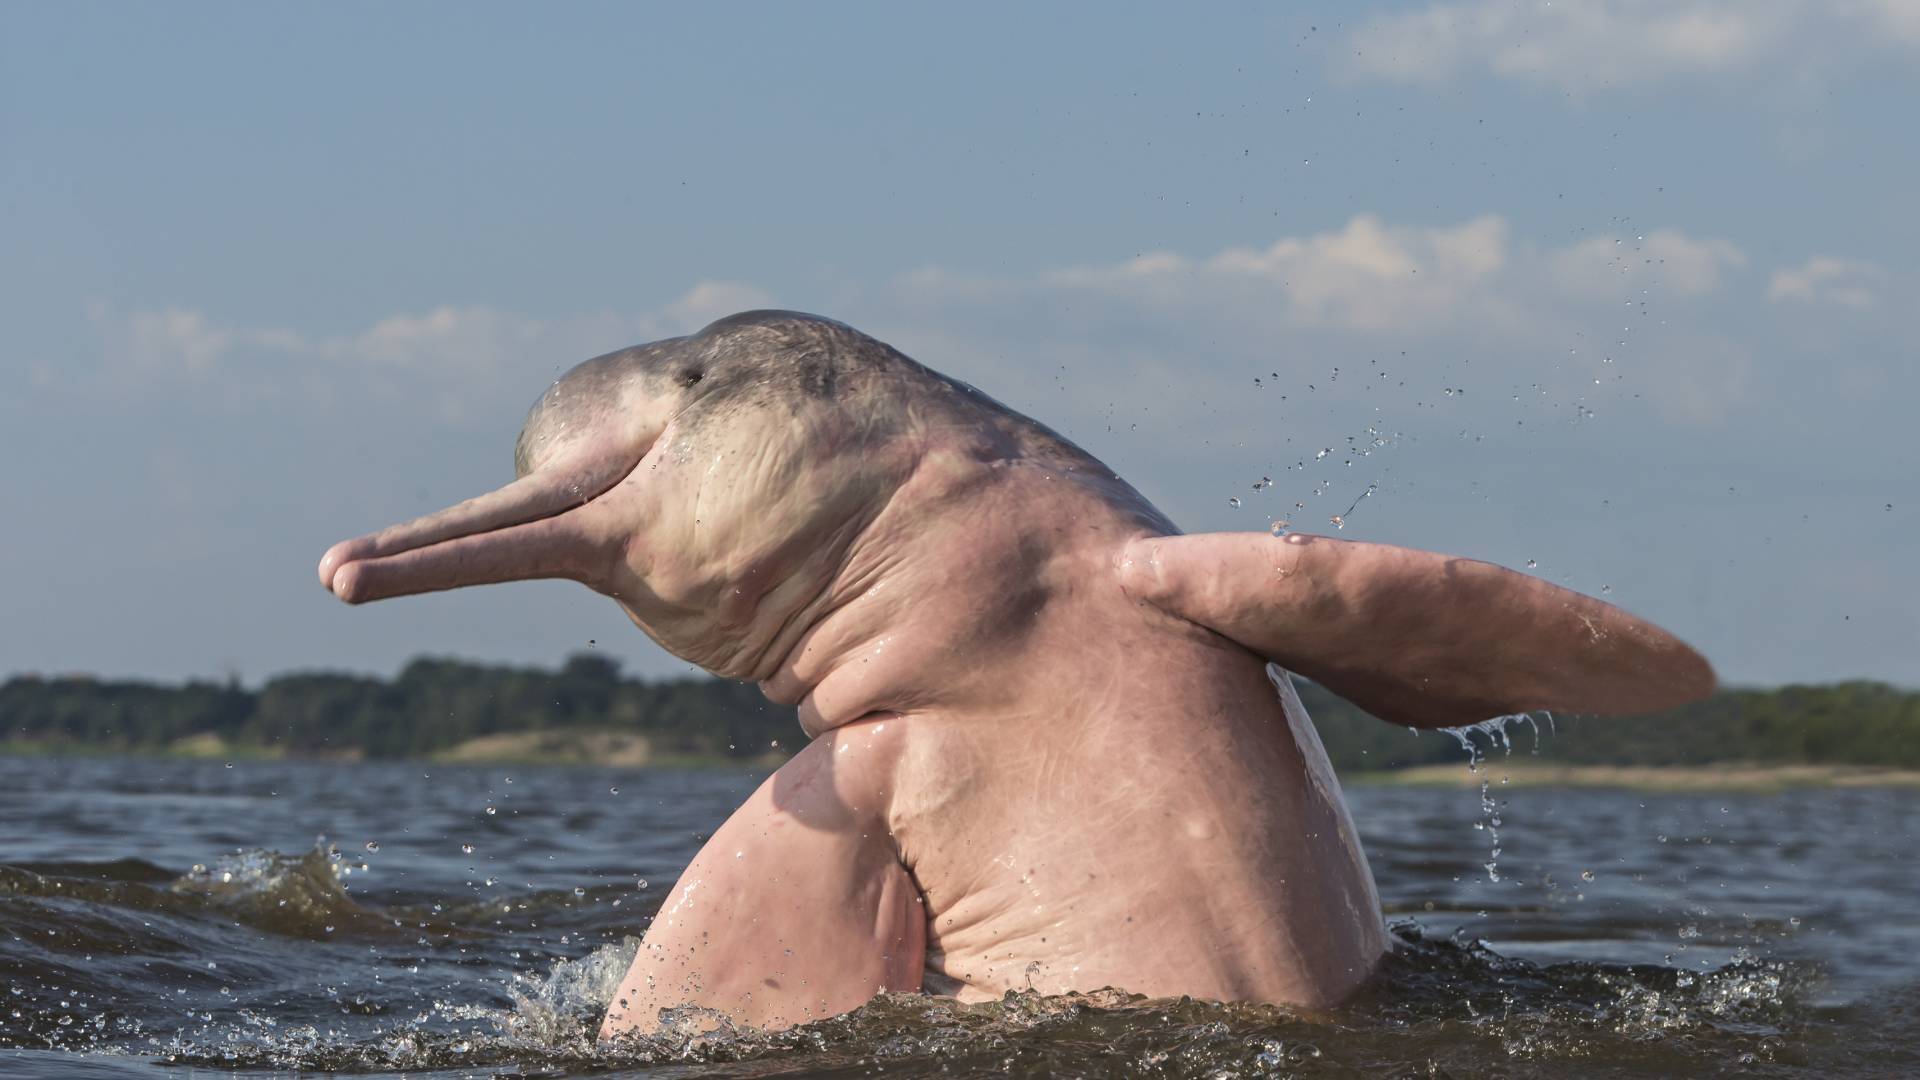 delfino di fiume Amazon salta fuori dall'acqua